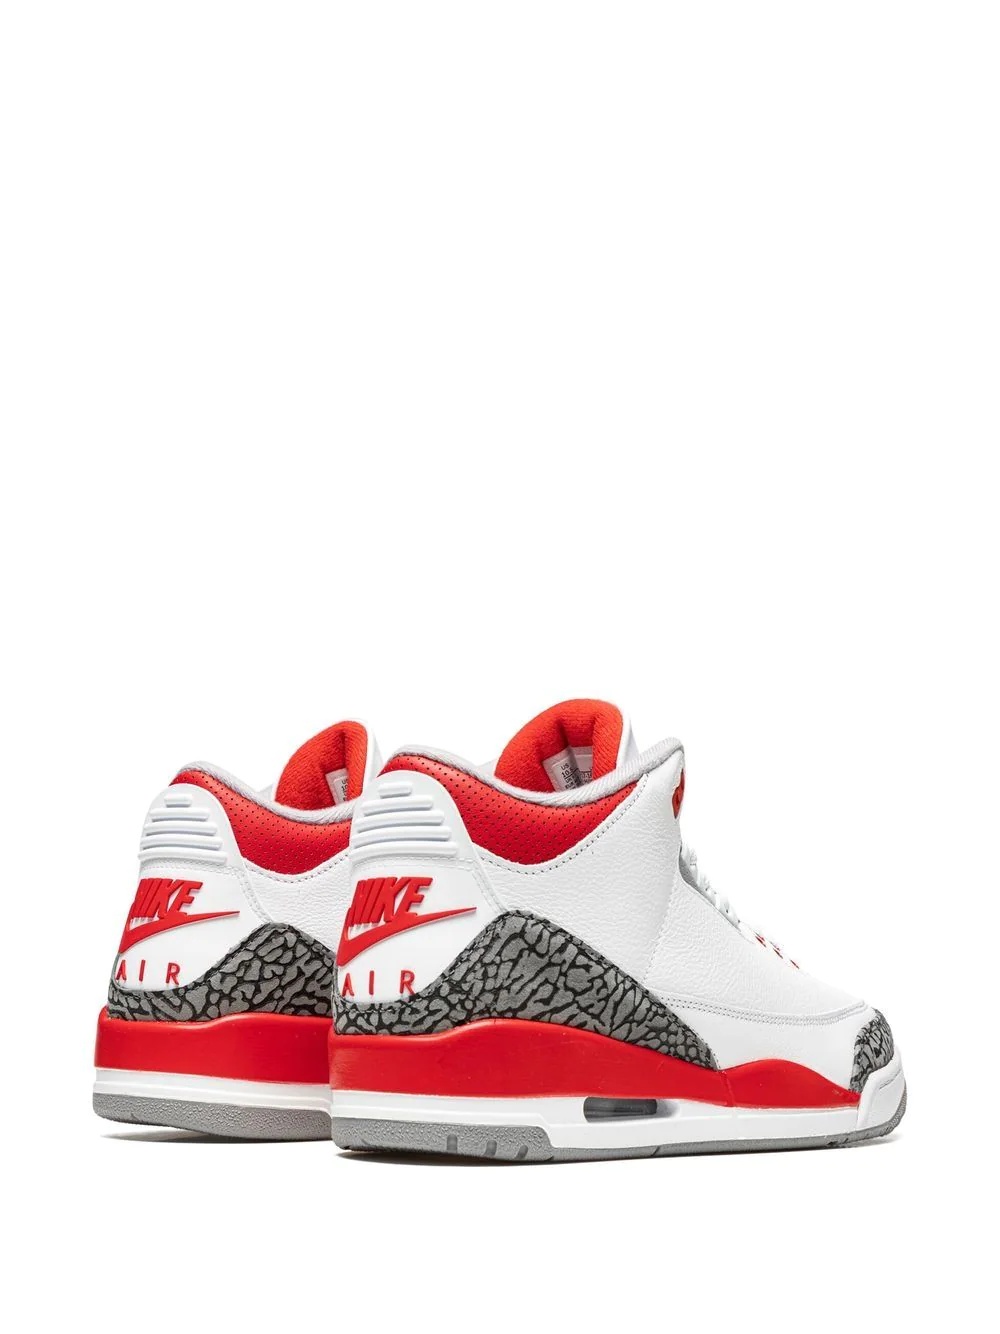 Air Jordan 3 Retro OG sneakers - 3